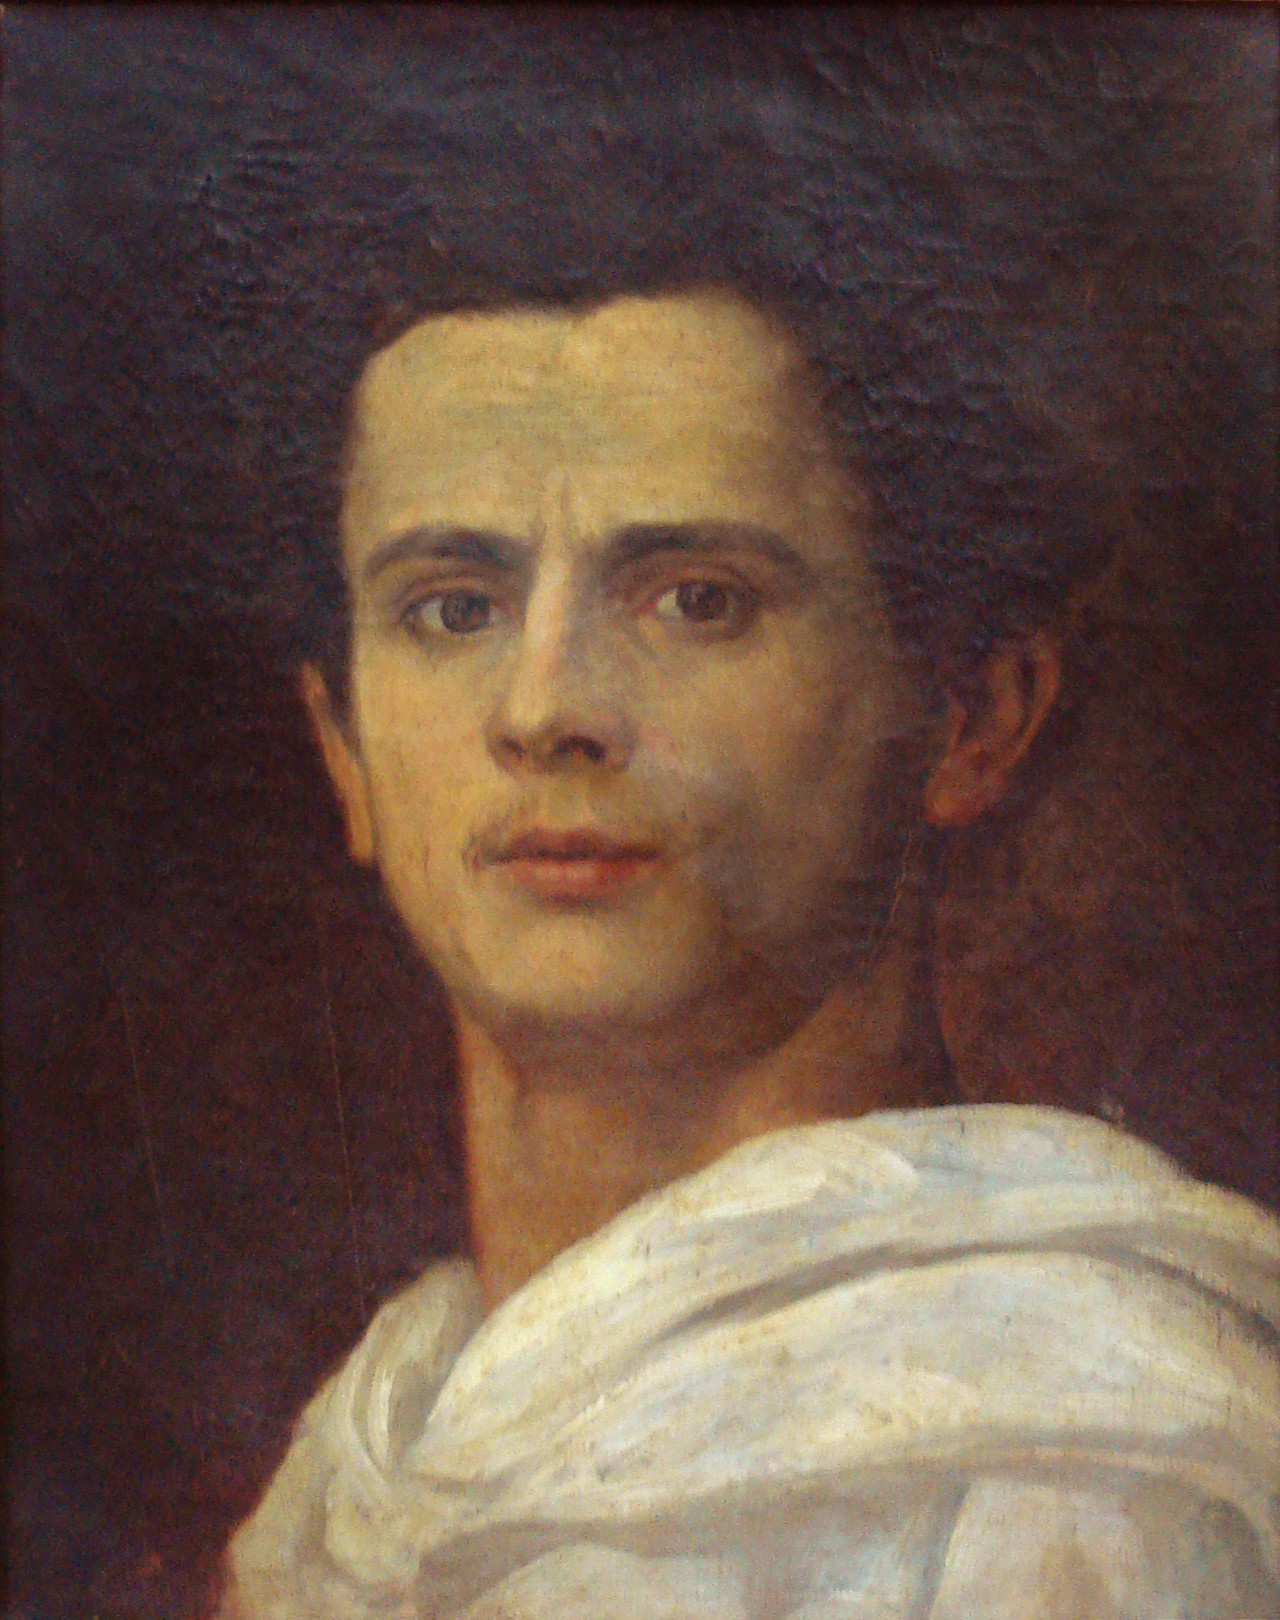 Ζοζέ Φεράζ Αλμέιντα Τζούνιορ - 8 Μαΐου 1850 - 13 Νοεμβρίο 1899